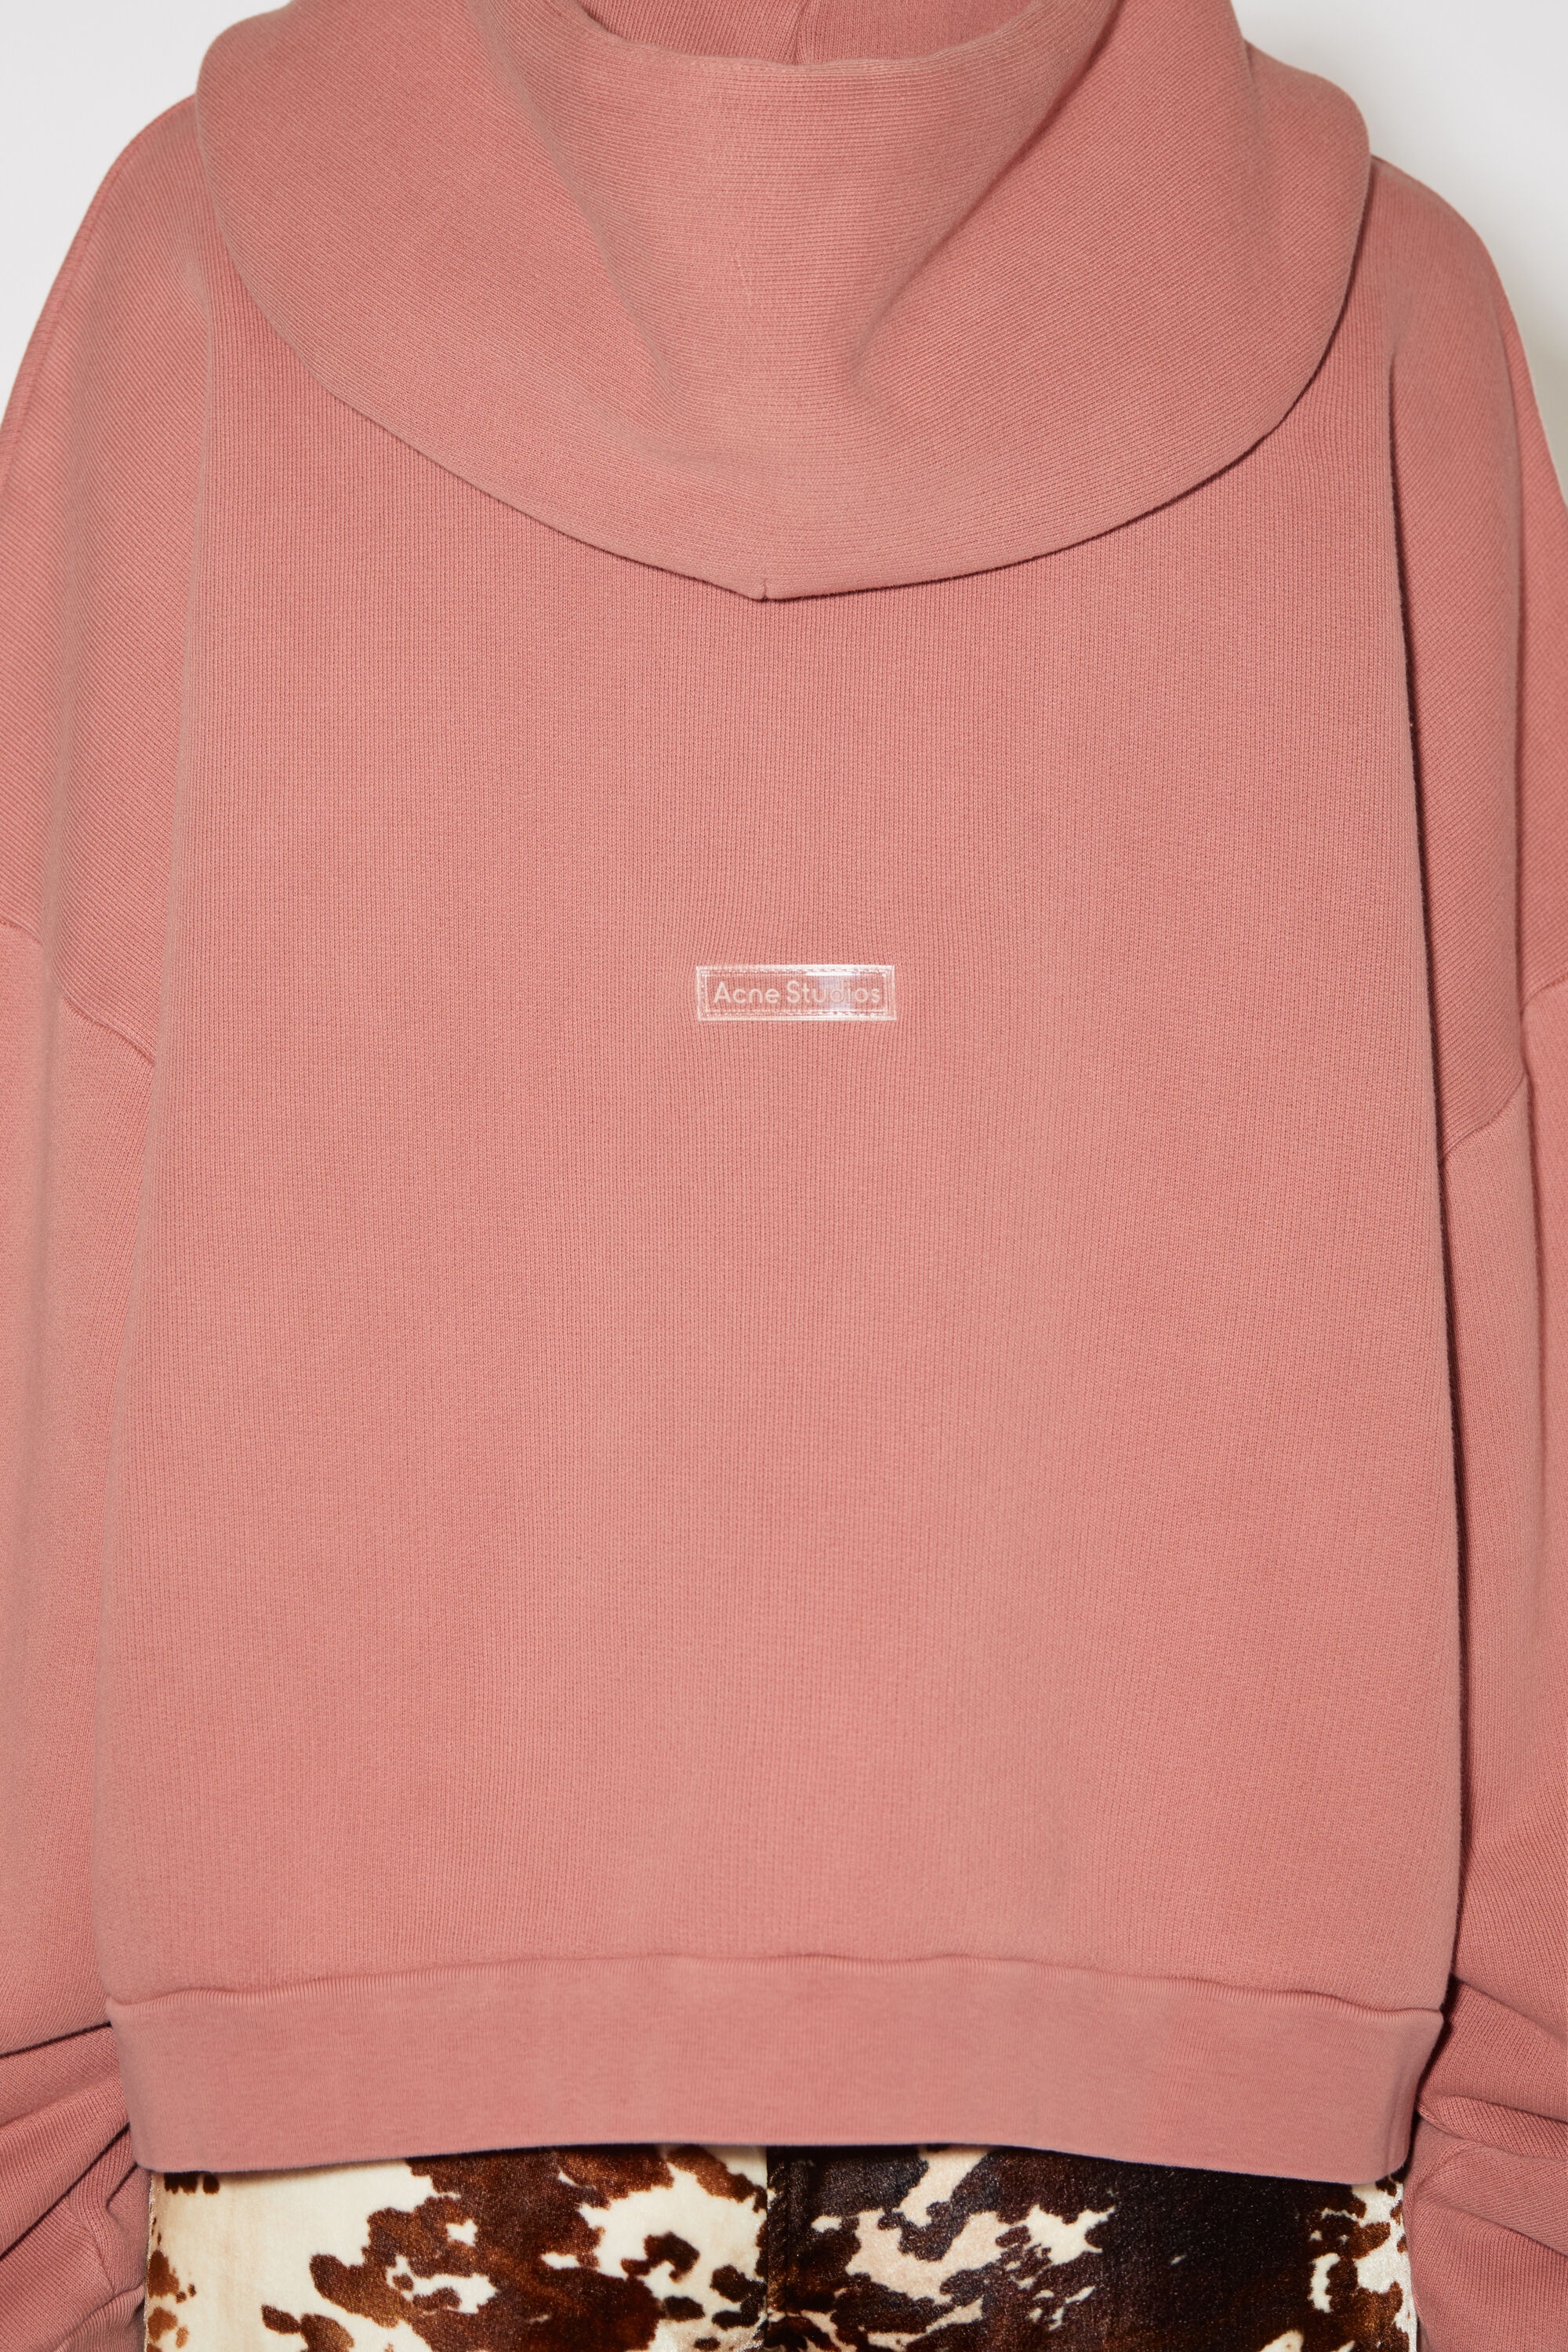 Acne Studios - Wool mohair hoodie - Faded pink